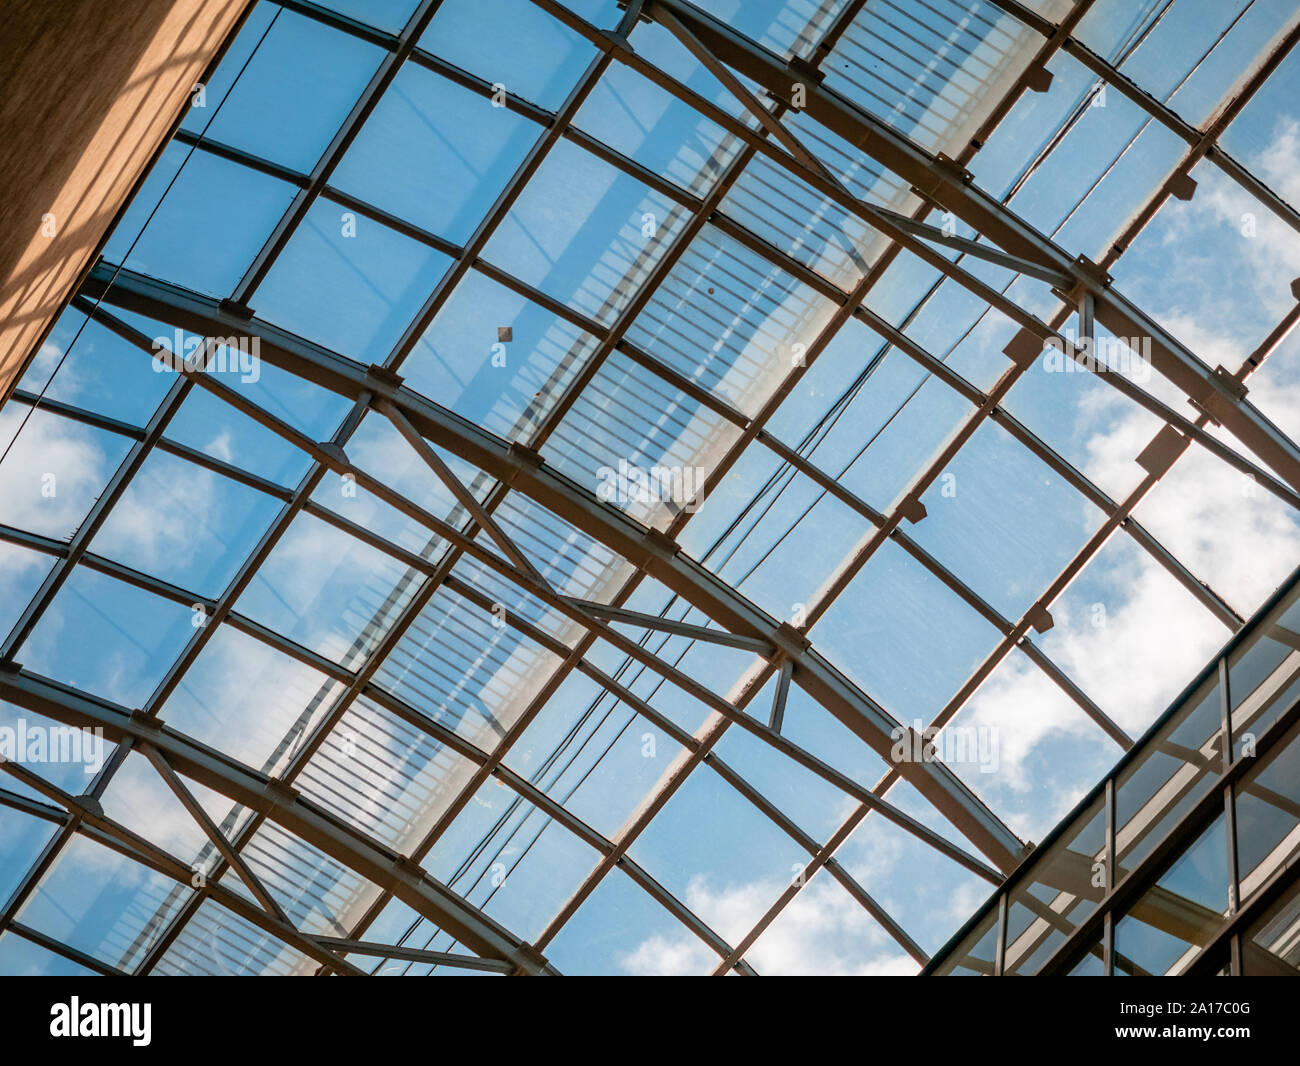 Vitrage du toit ajouré sur le centre commercial. Plafond dans la forme  d'une arche en acier avec des fenêtres en verre. Ciel bleu sur un jour  nuageux Photo Stock - Alamy